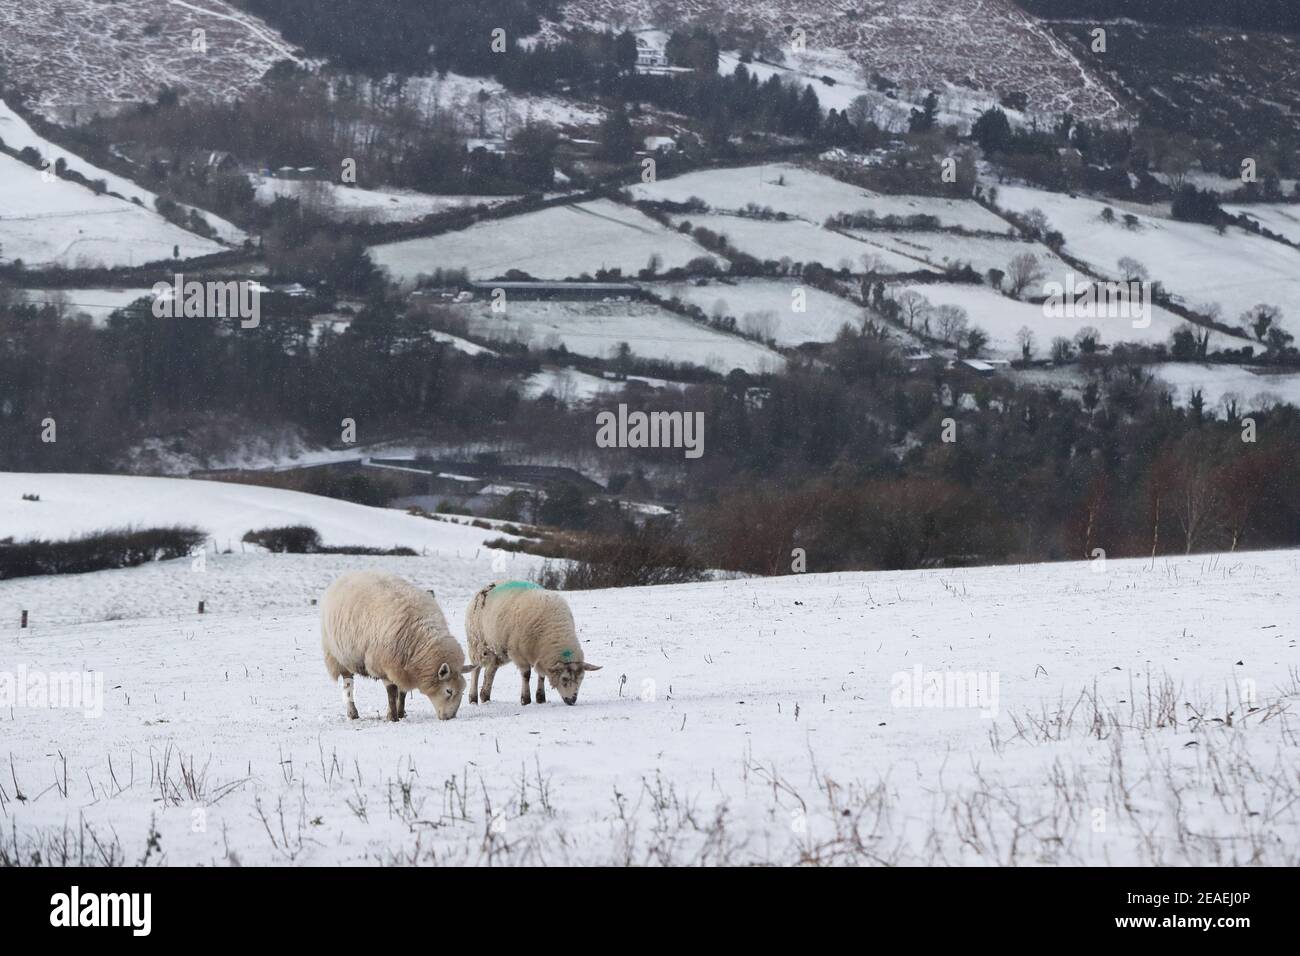 Pecore nella neve a Glenasmole, Co. Dublino, come Storm Darcy continua a portare ghiaccio, neve e venti freddi in Irlanda e nel Regno Unito. Data immagine: Martedì 9 febbraio 2021. Foto Stock